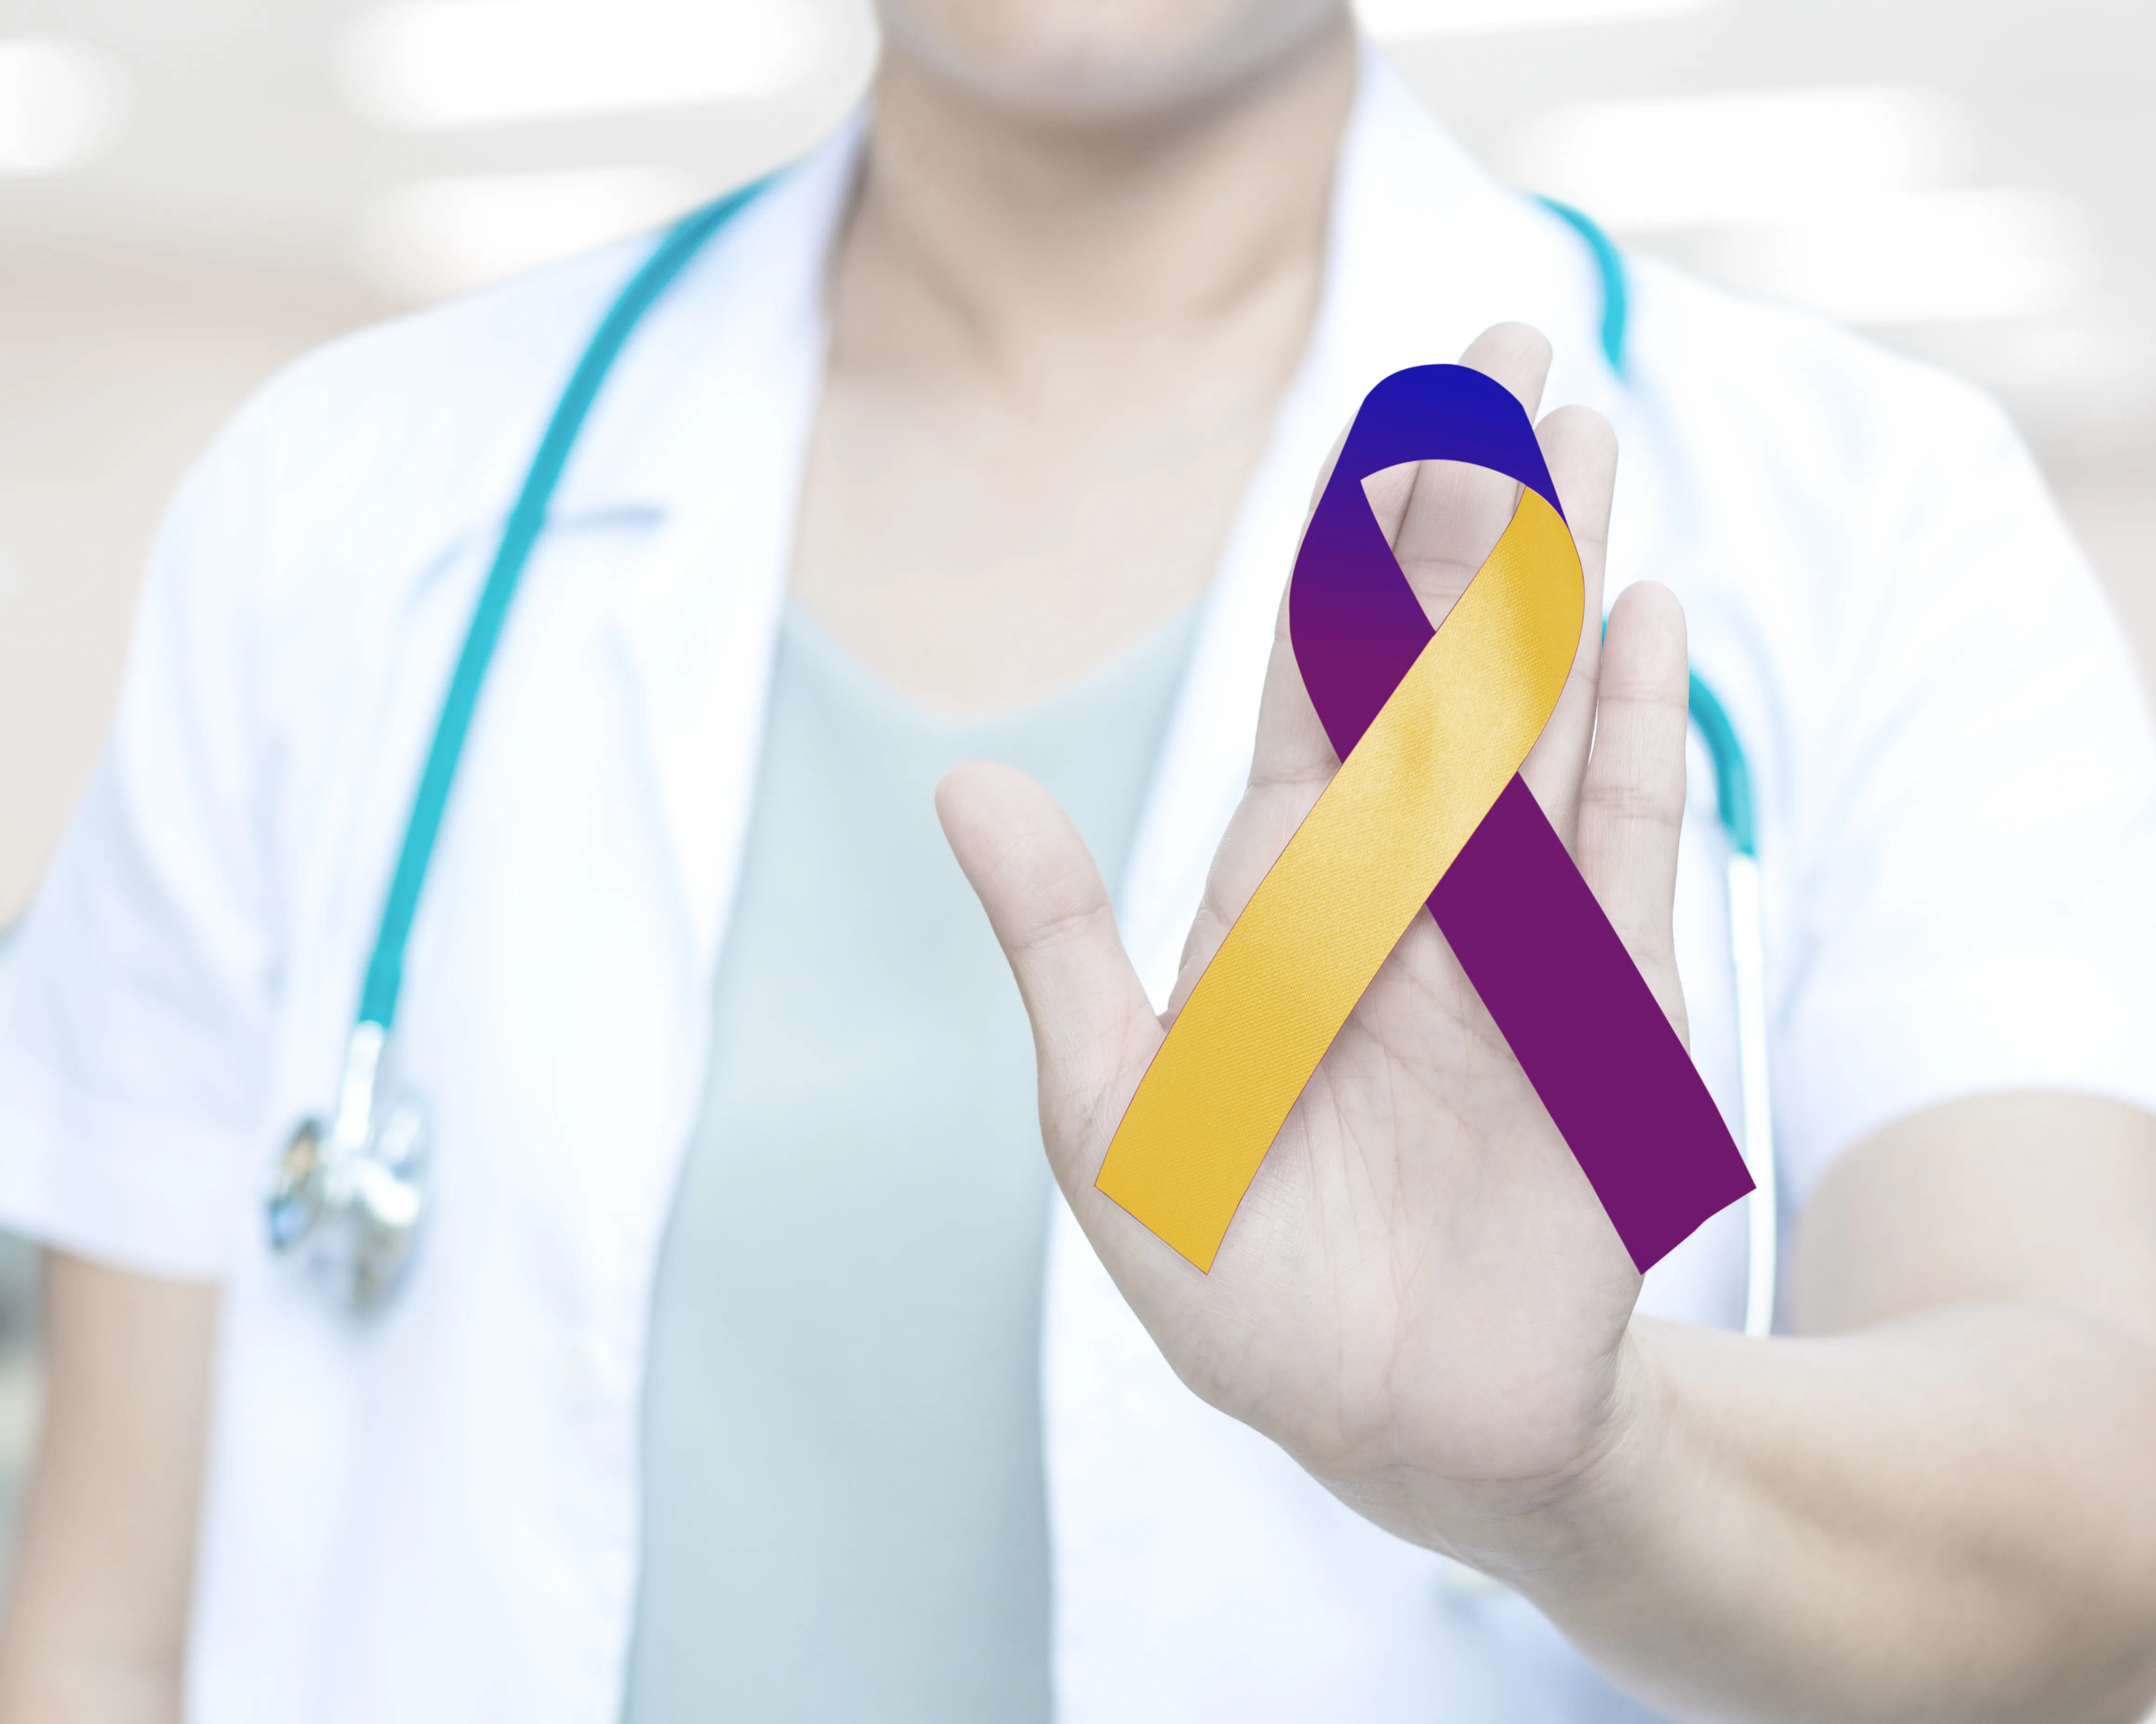 Common Risk Factors for Bladder Cancer